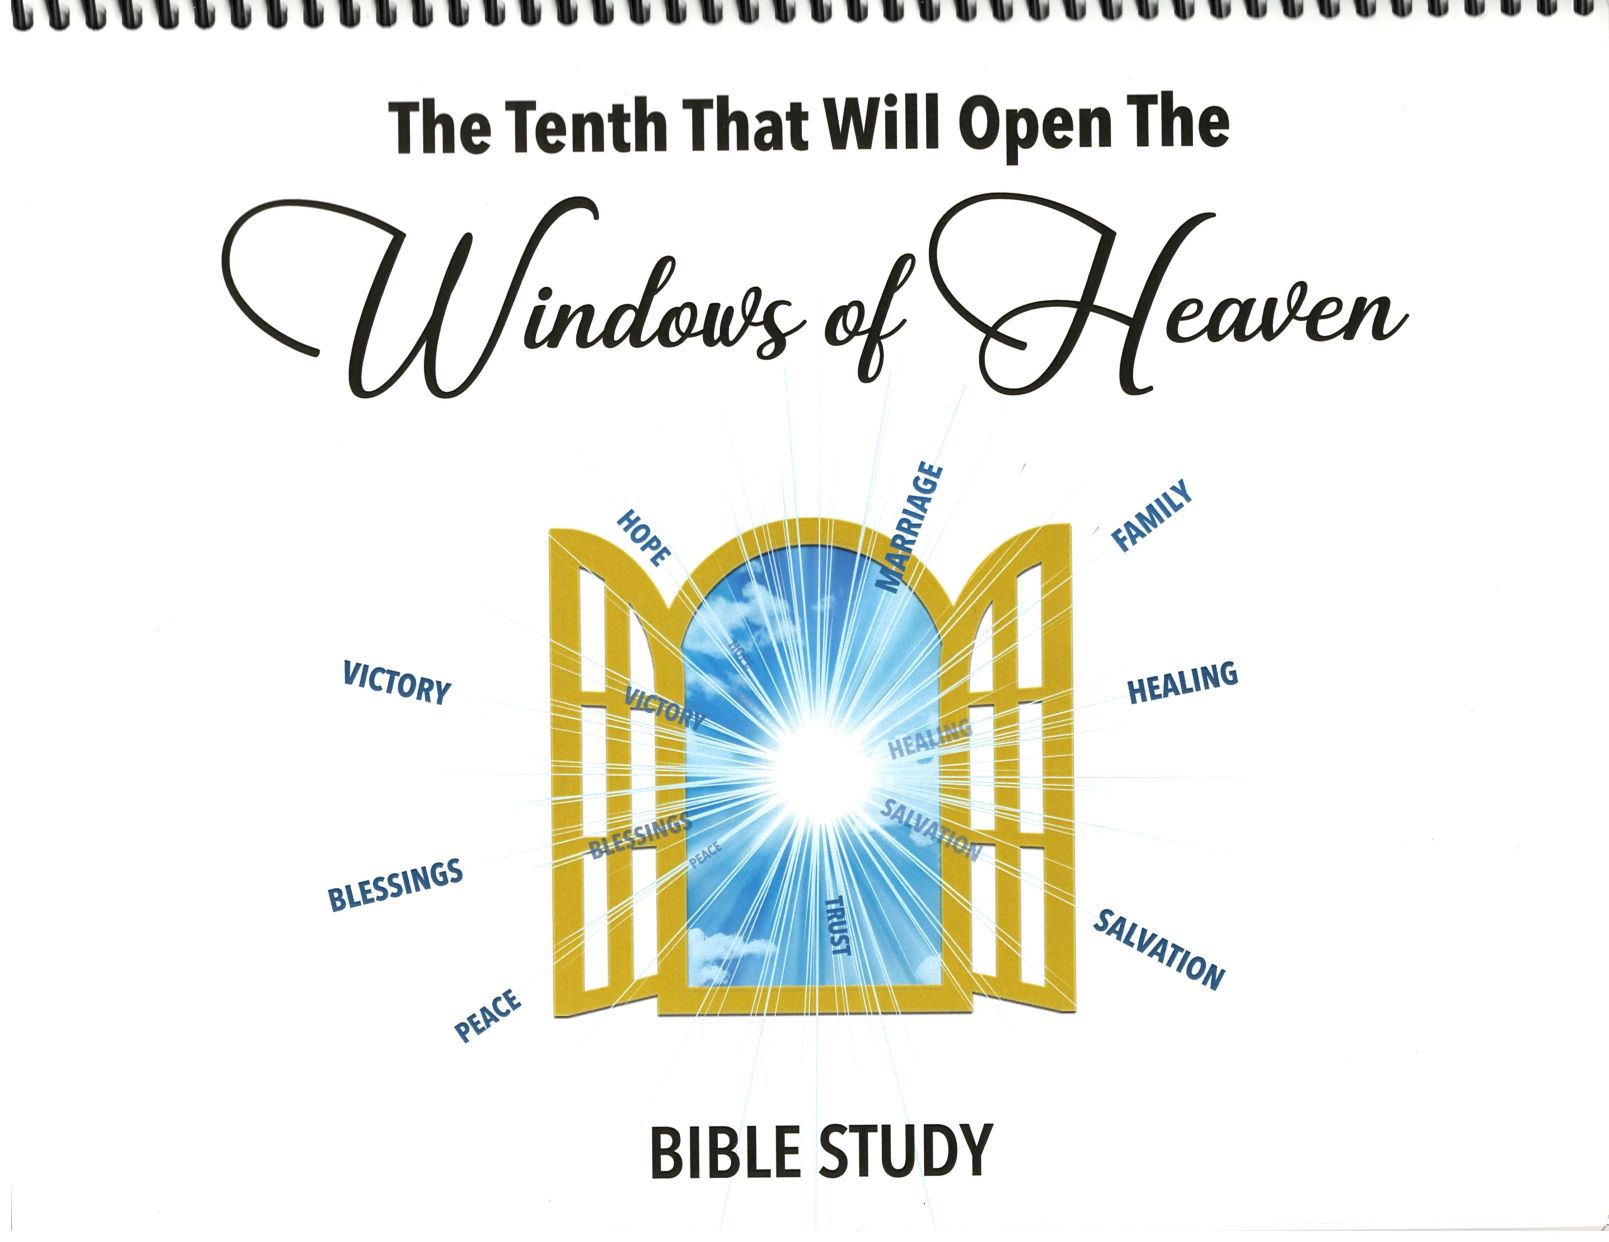 Window to Heaven Bible Study Chart (Giving)